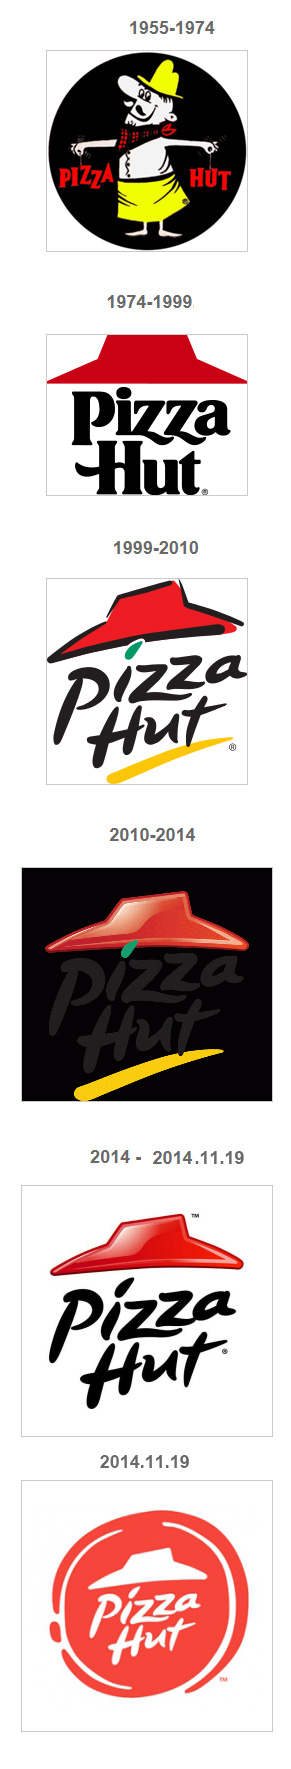 必胜客(Pizza Hut)更换新标识